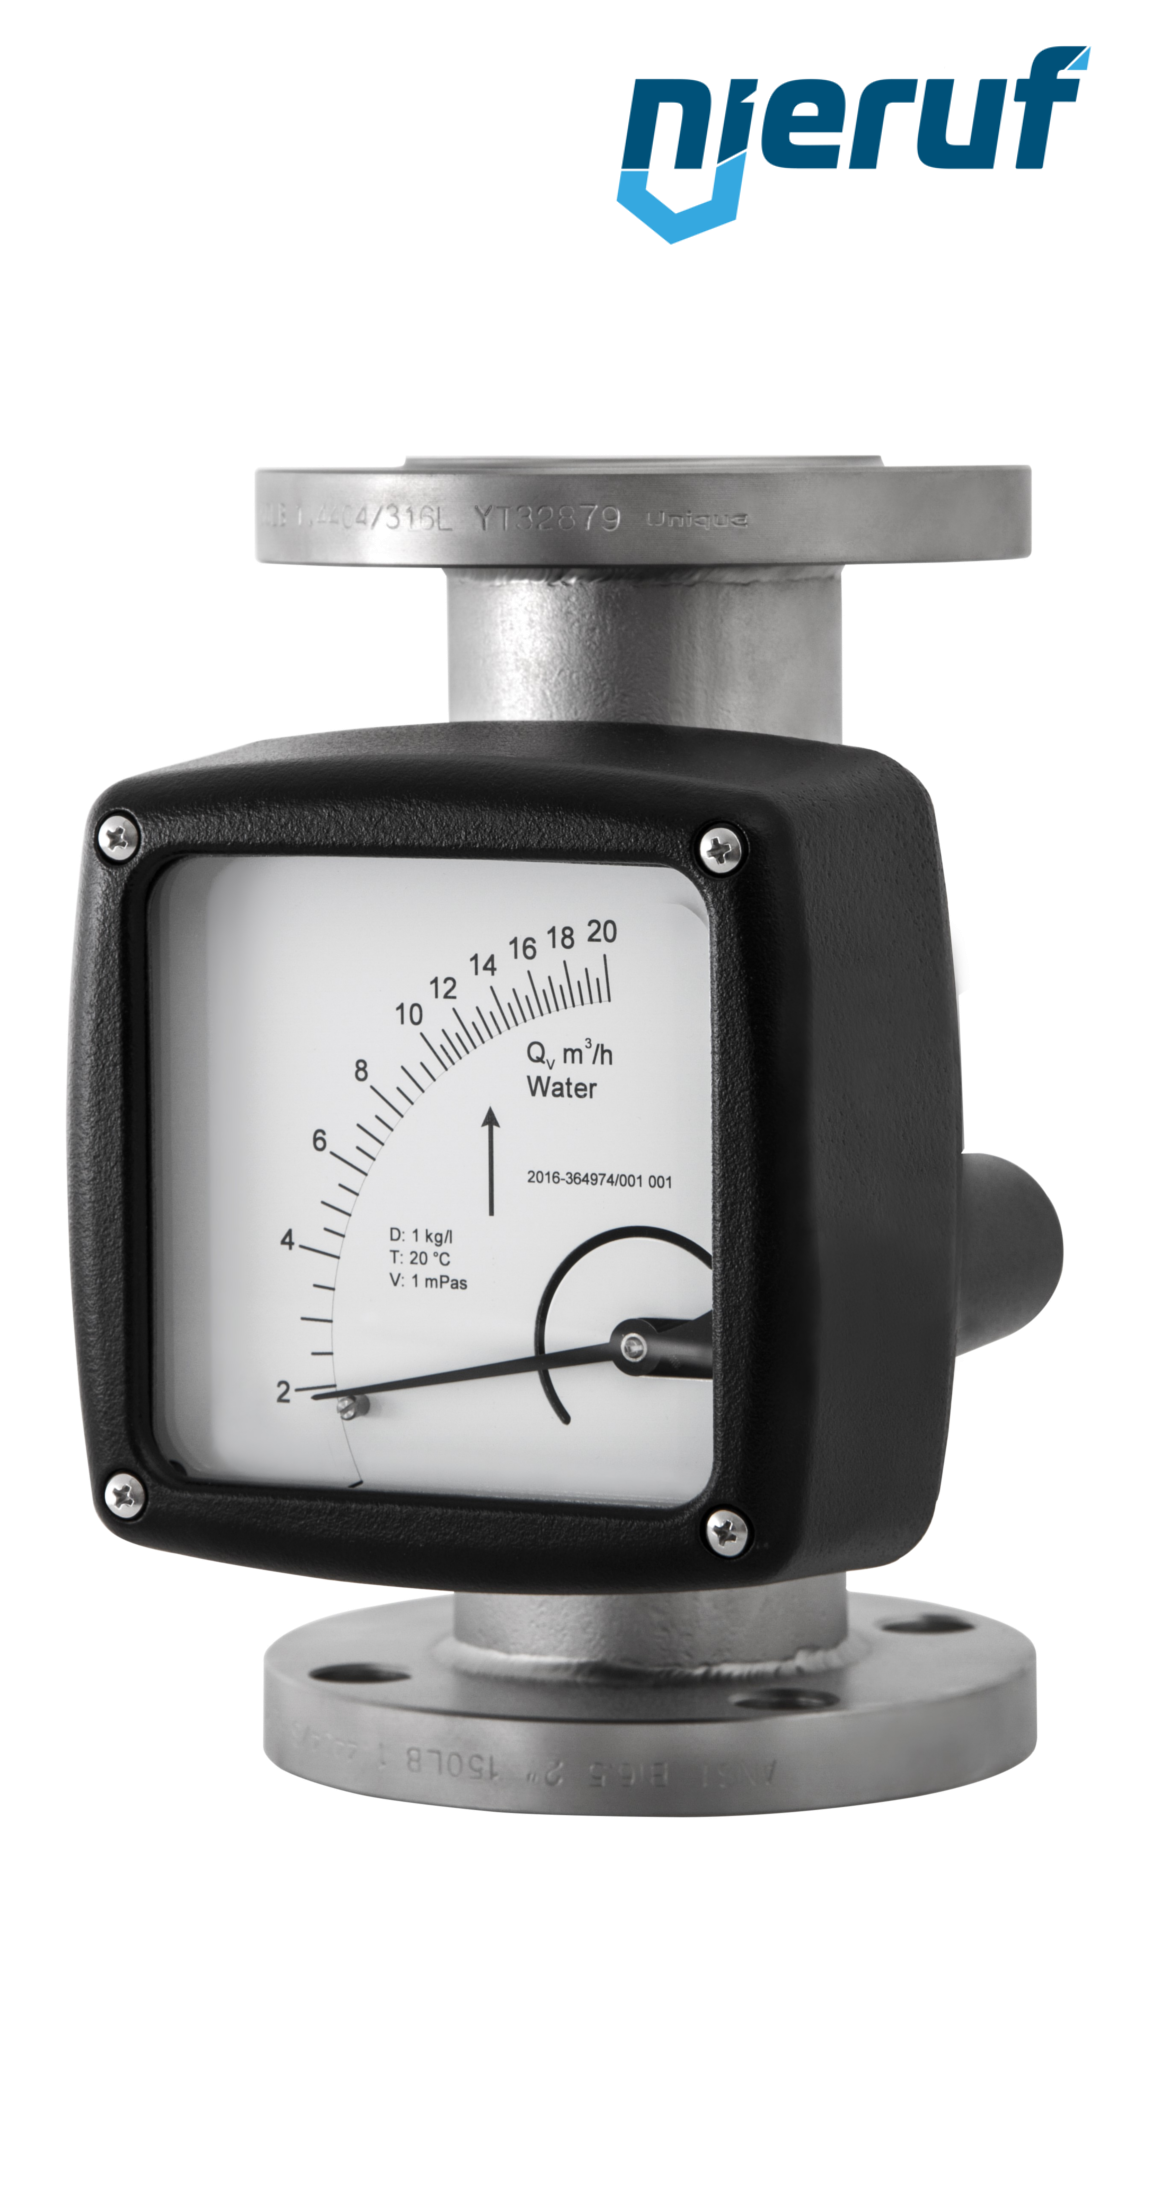 misuratore di portata / flussometro flangiato DN150-attacco 240,0 - 2400,0 m3/h tubo DN100 aria